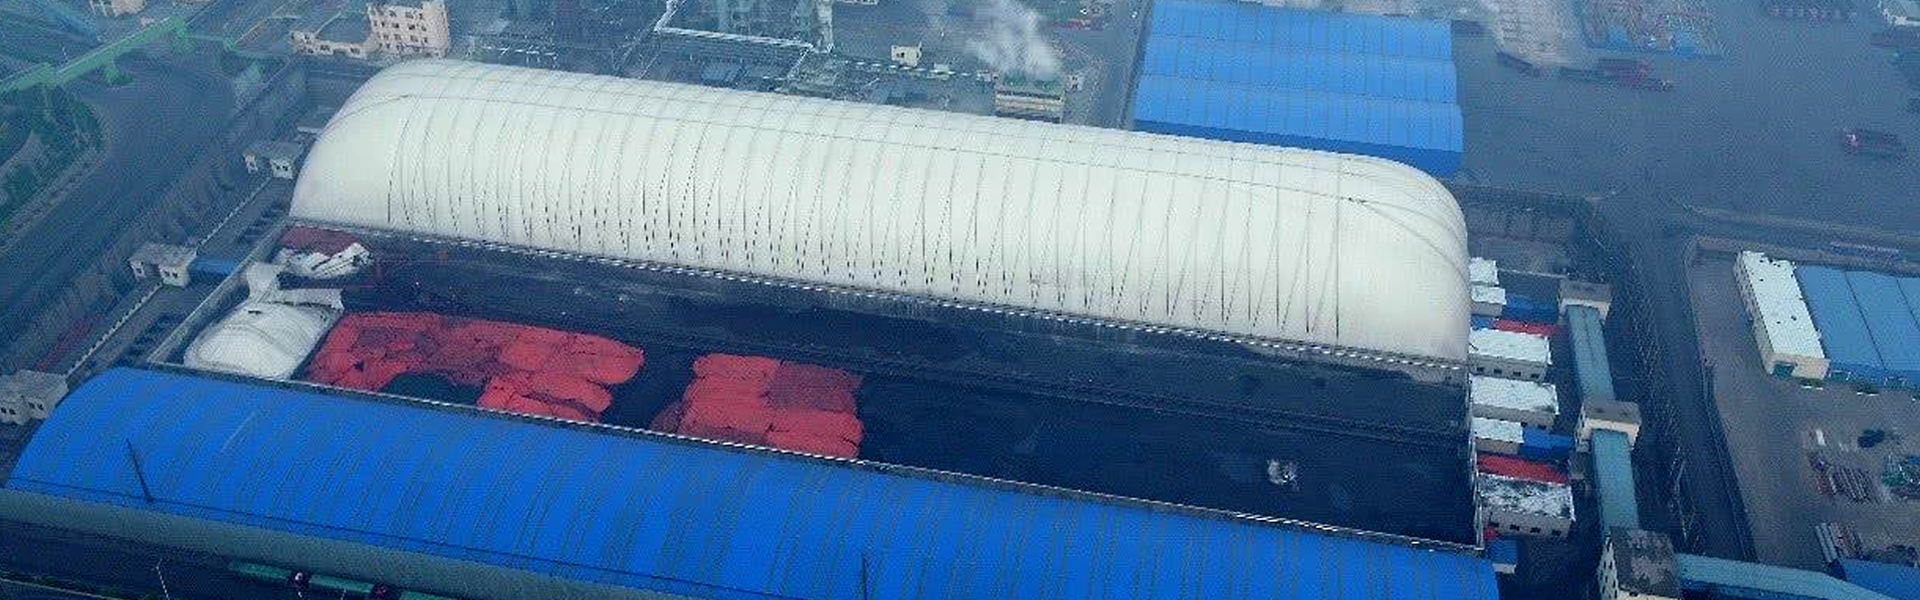 世界最大充气膜煤棚——神华集团巴彥淖尔充气膜煤棚项目